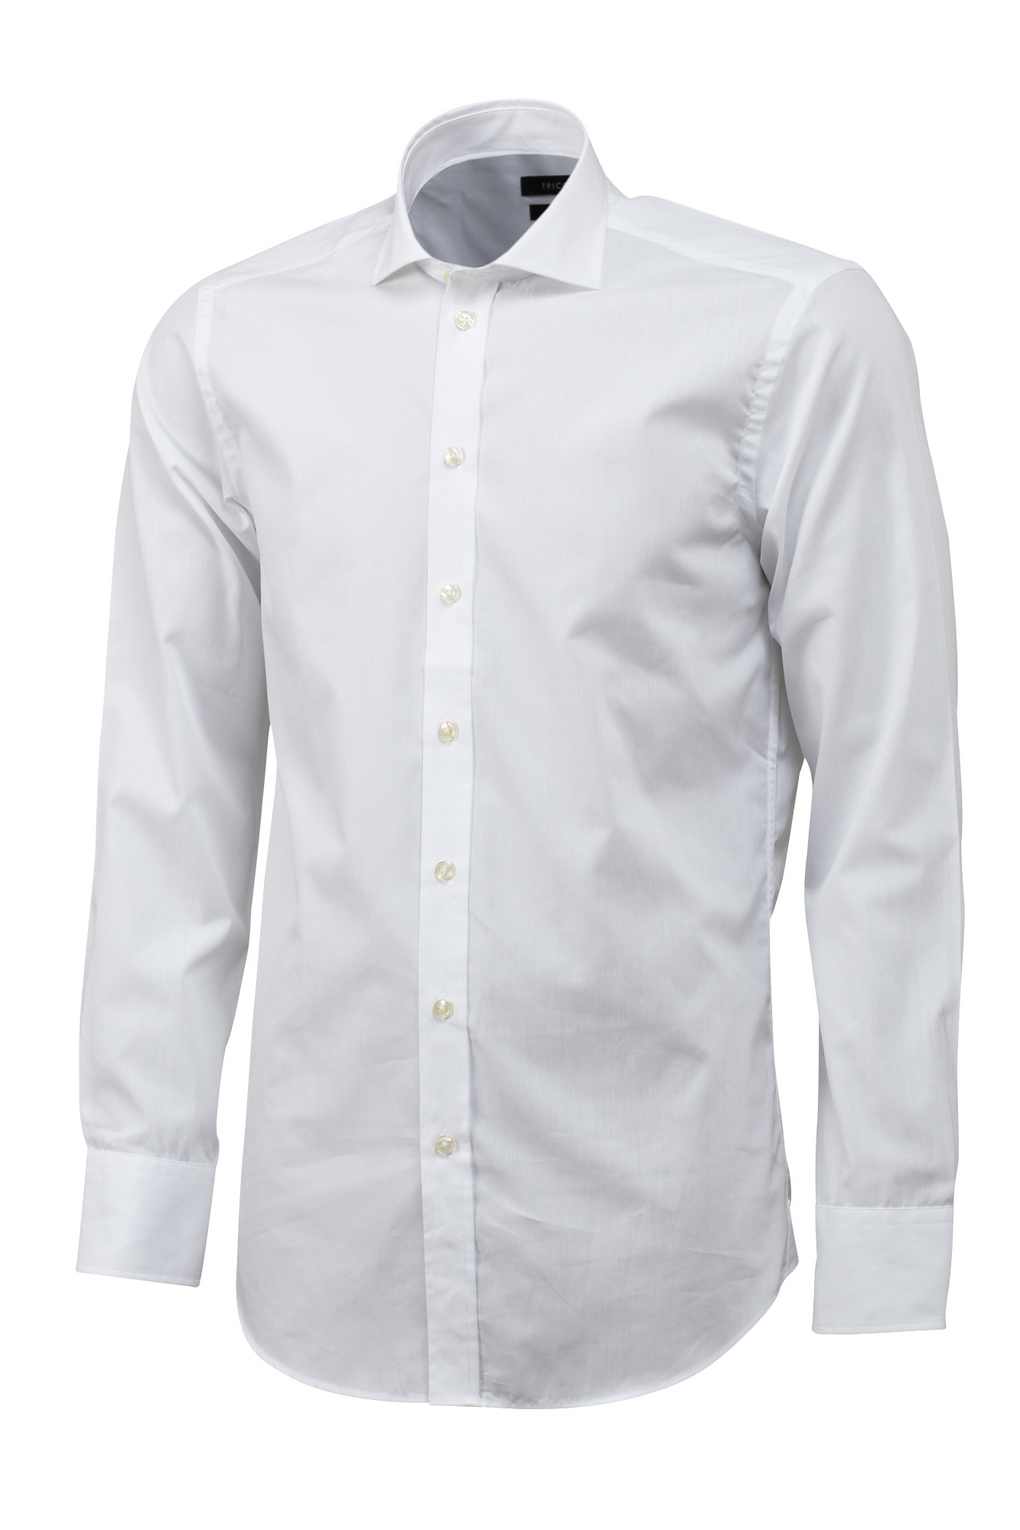 Tricorp Overhemd 100% Katoen Slim Fit White